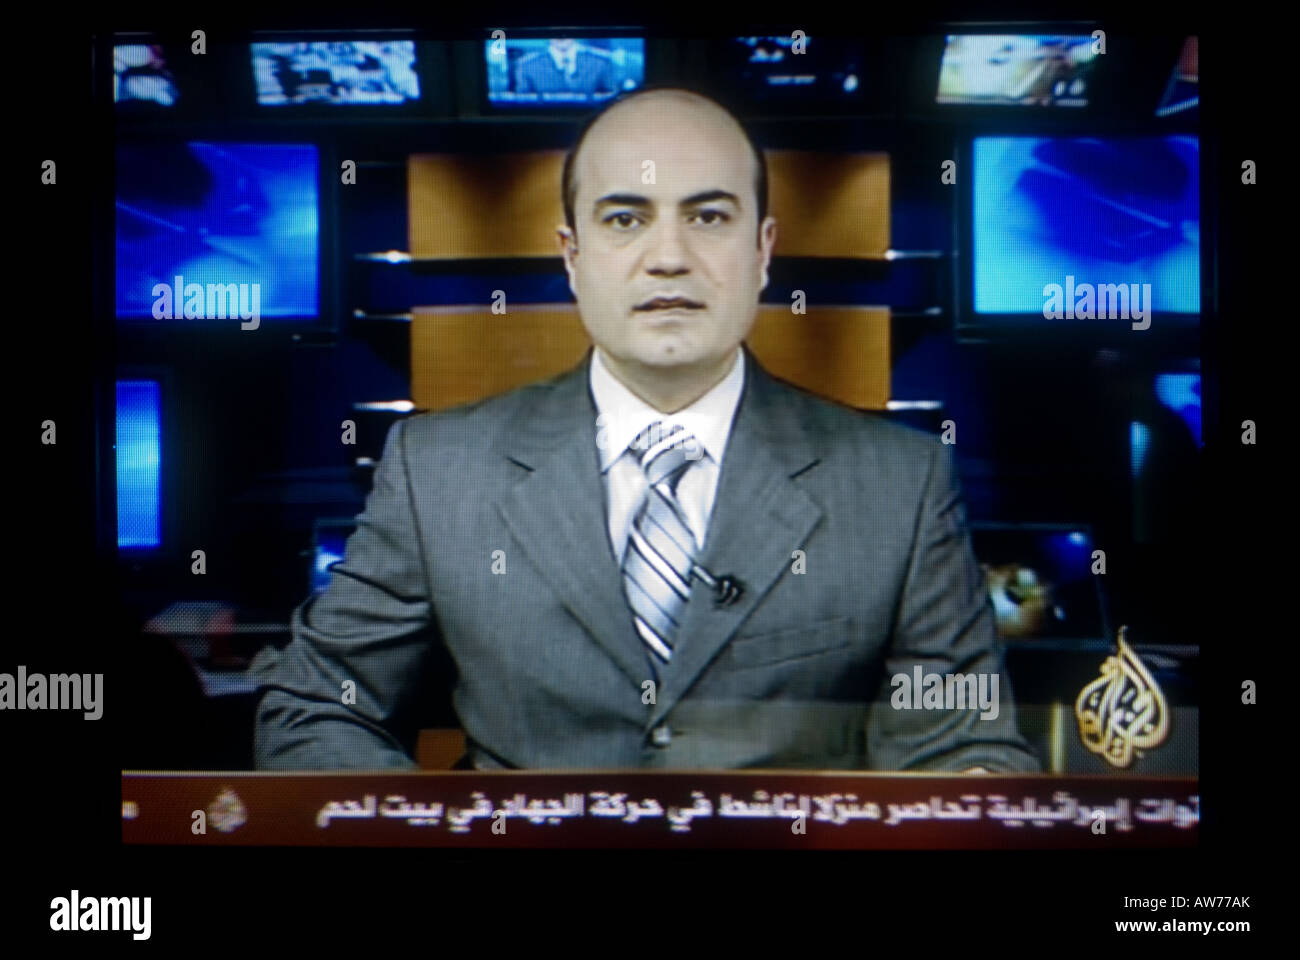 Aljazeera news